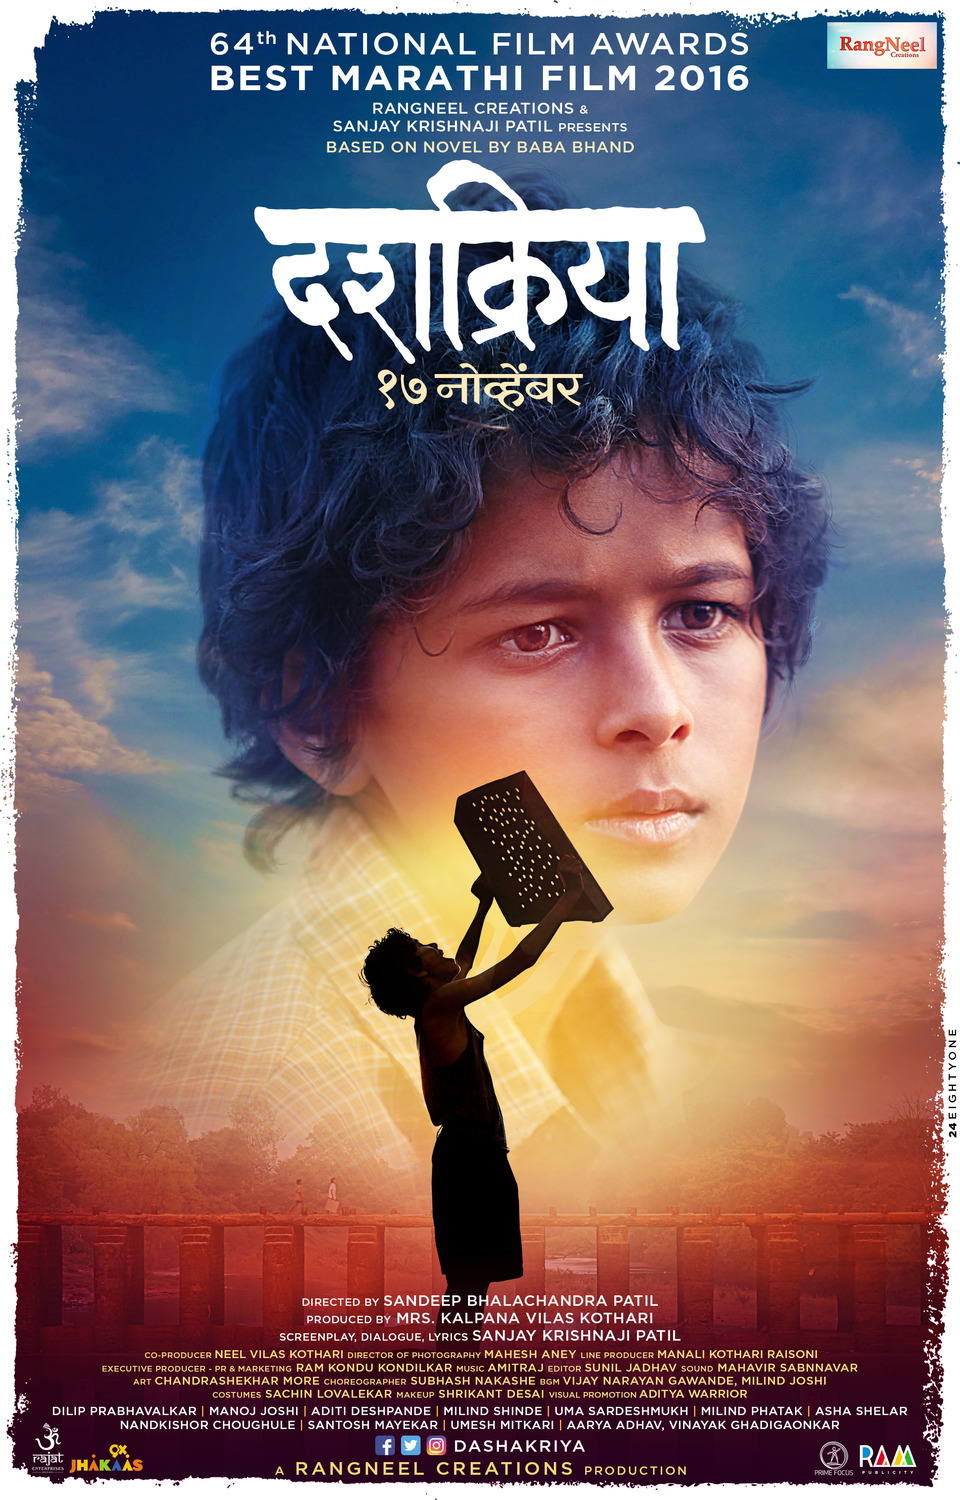 Extra Large Movie Poster Image for Dashakriya (#5 of 5)